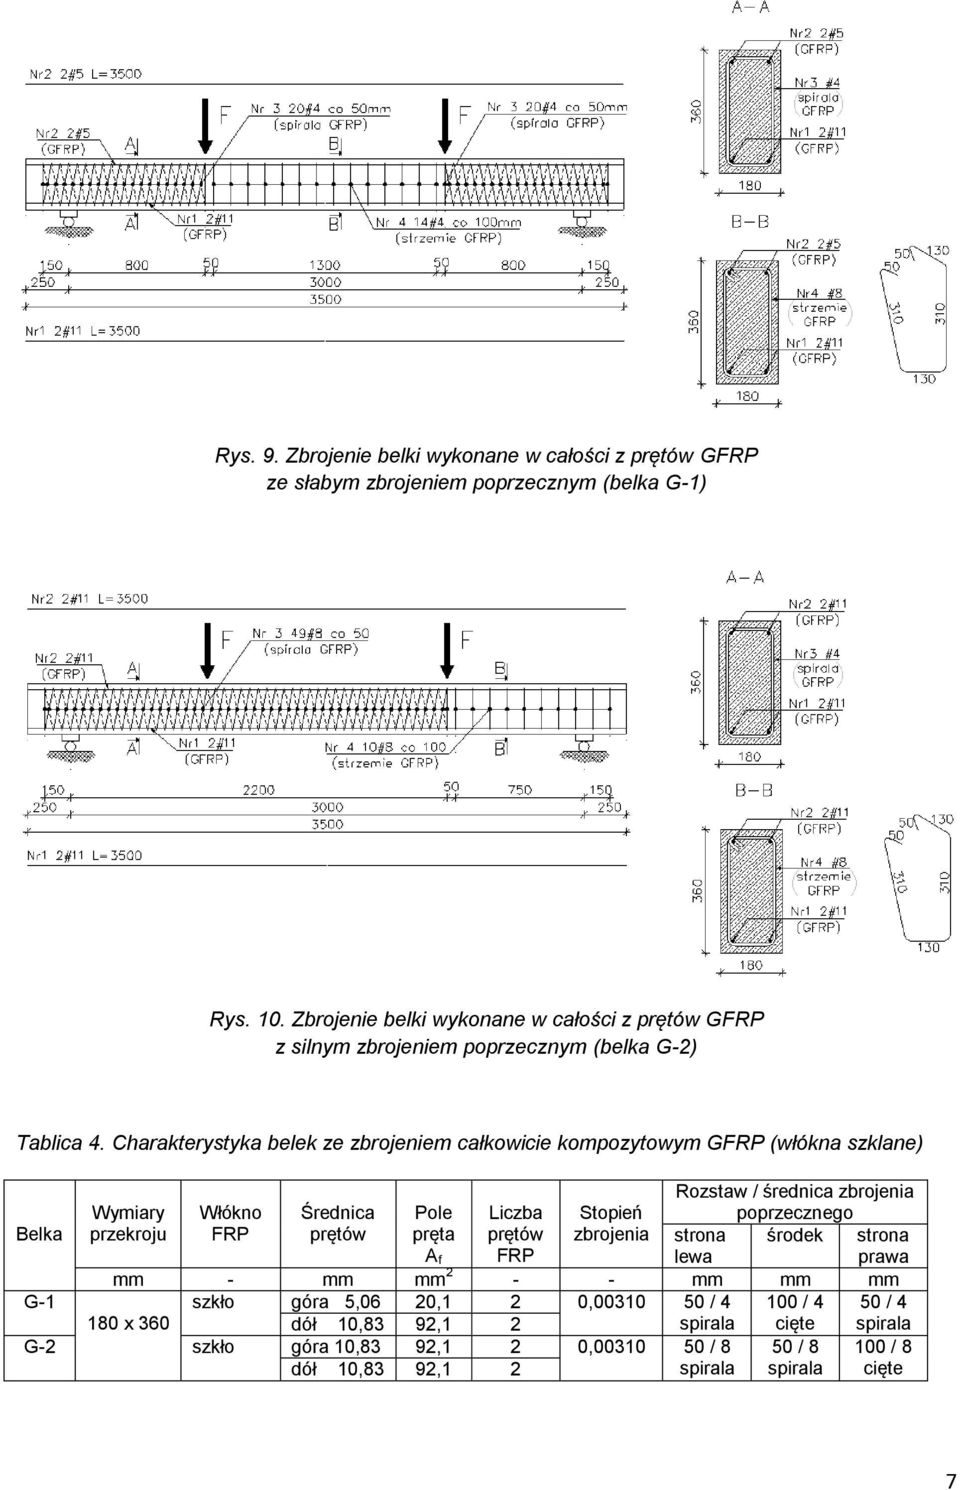 Charakterystyka belek ze zbrojeniem całkowicie kompozytowym GFRP (włókna szklane) Wymiary Włókno Średnica Pole Liczba Stopień Rozstaw / średnica zbrojenia poprzecznego Belka